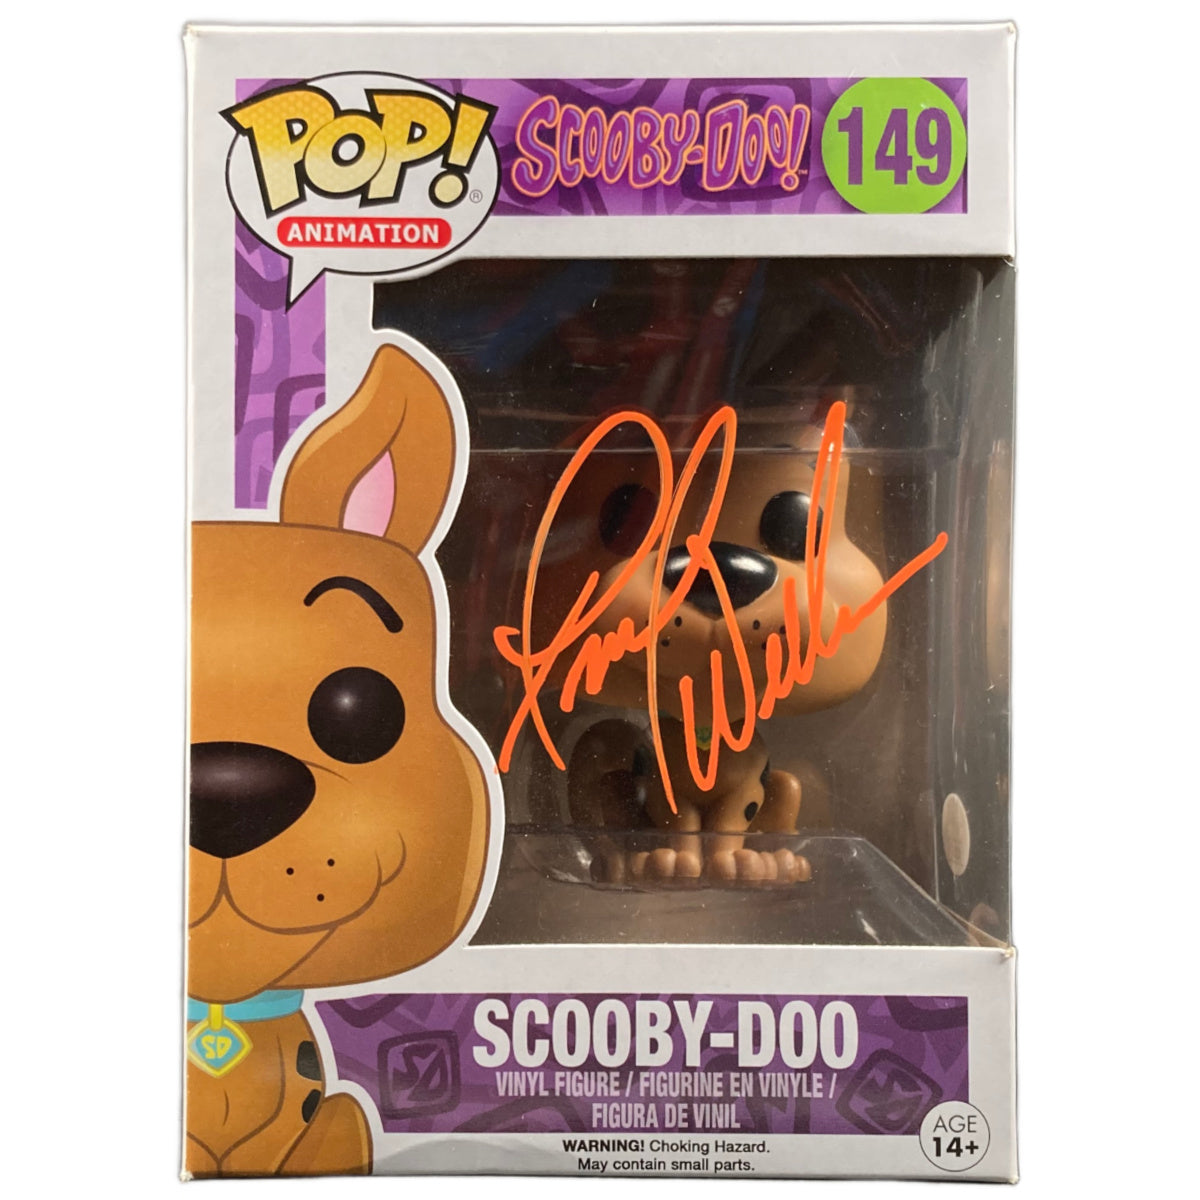 Frank Welker sigend Scooby-Doo! Scooby Doo #149 Funko Pop JSA COA